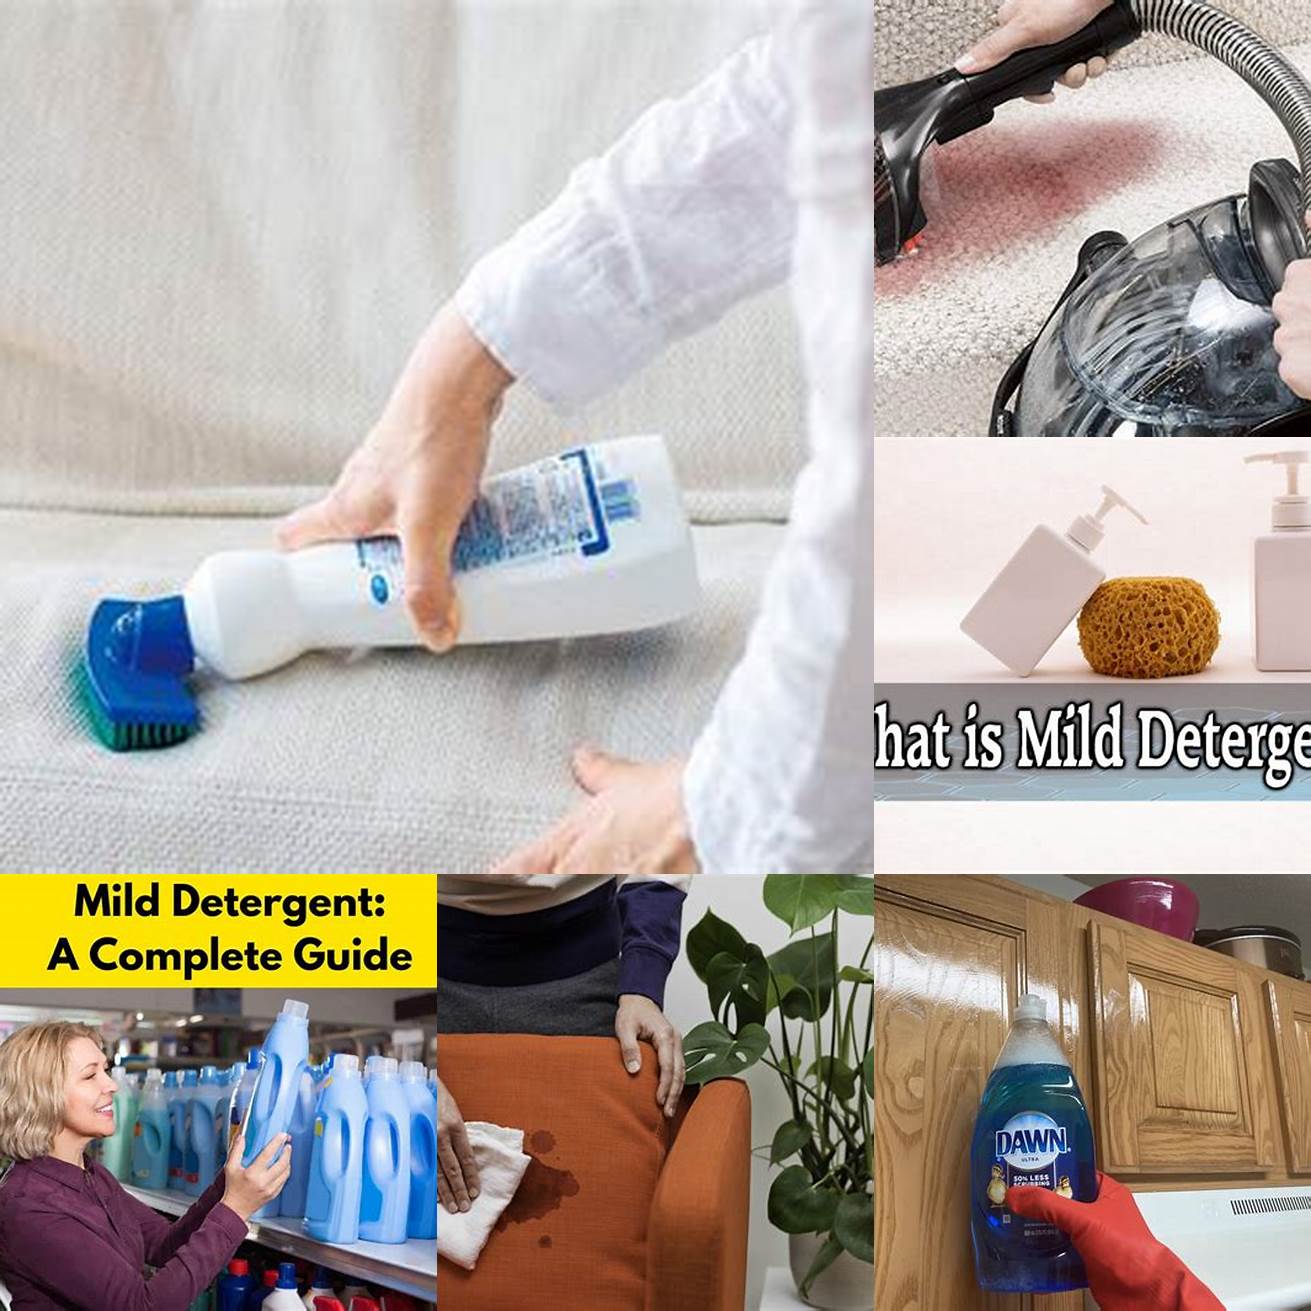 Using Mild Detergent and Warm Water